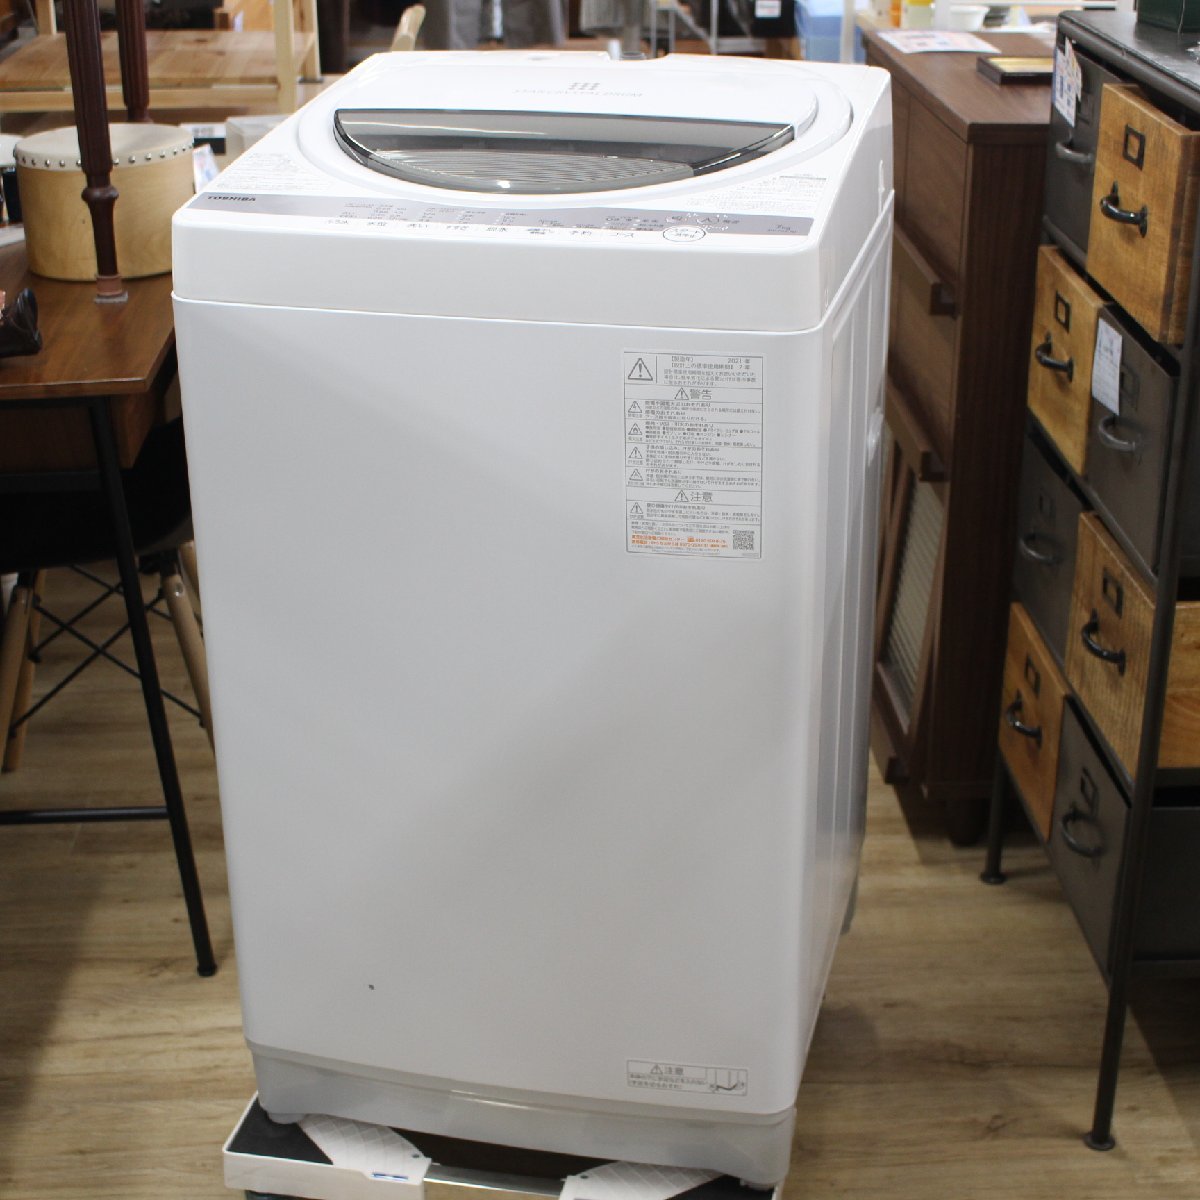 東京都文京区にて 東芝 全自動洗濯機 AW-7G9 2021年製 を出張買取させて頂きました。